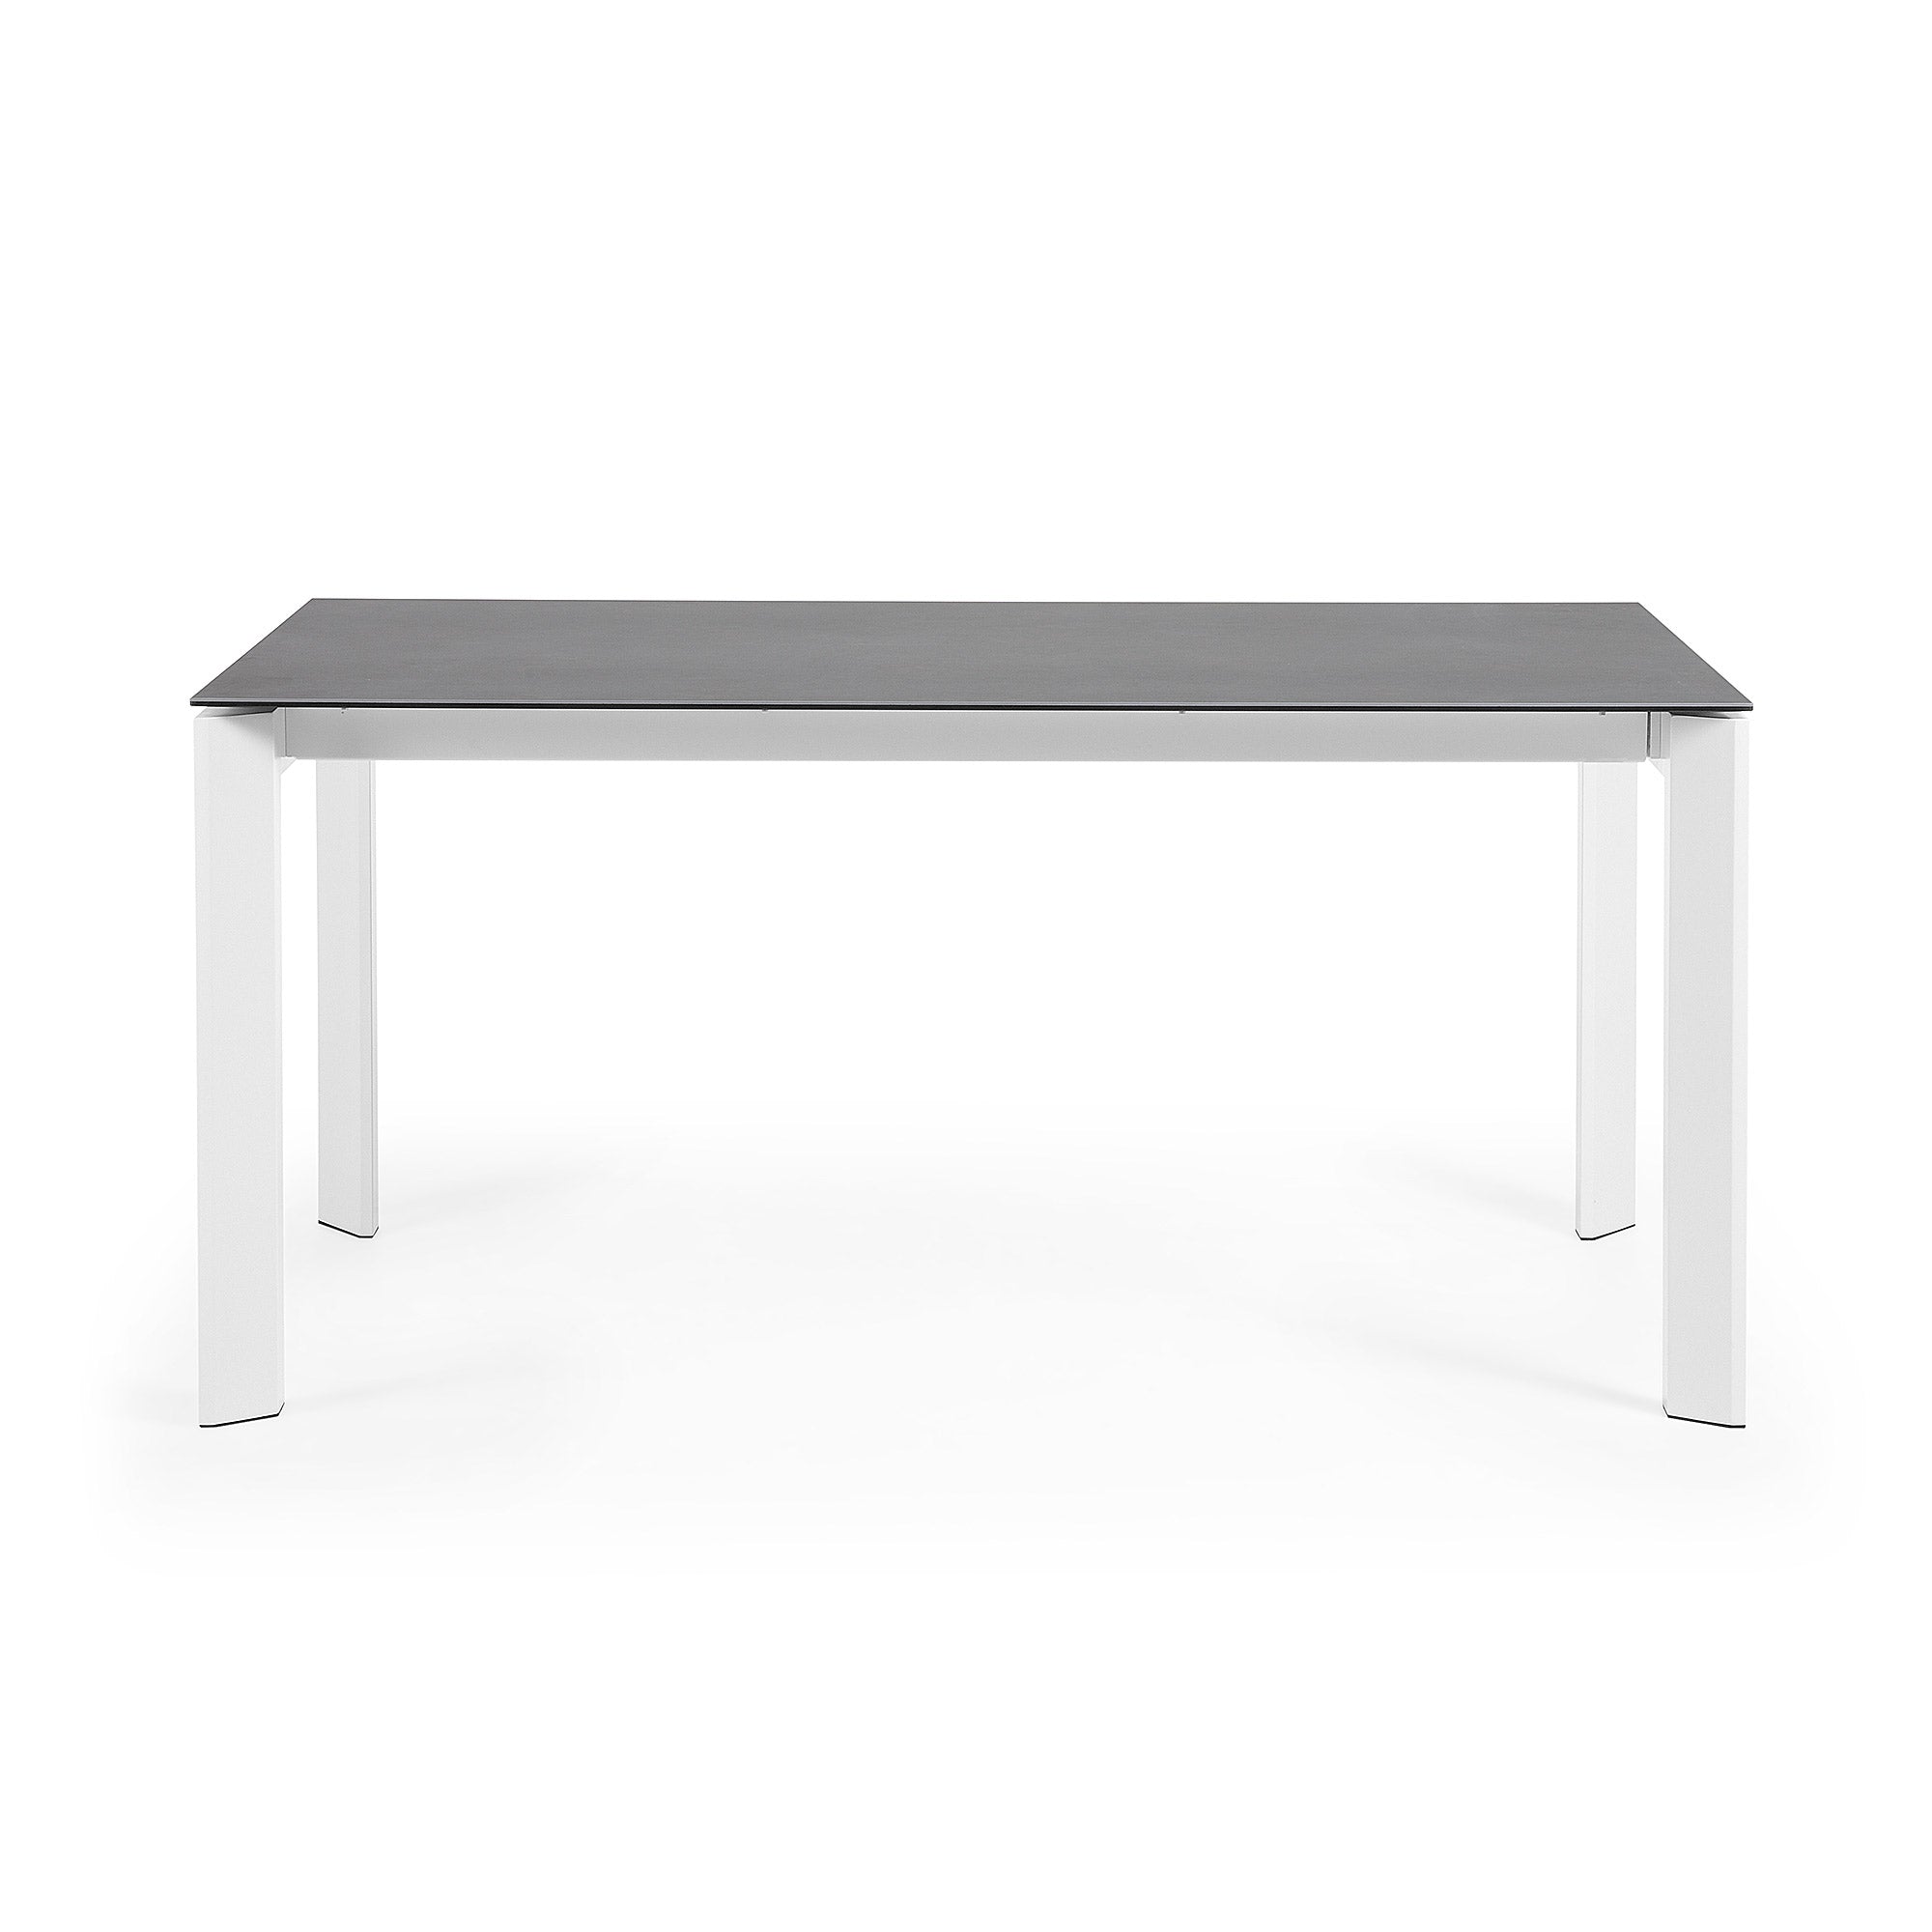 Axis porcelán kihúzható asztal Volcano Rock kivitelben, fehér lábakkal 160 (220) cm